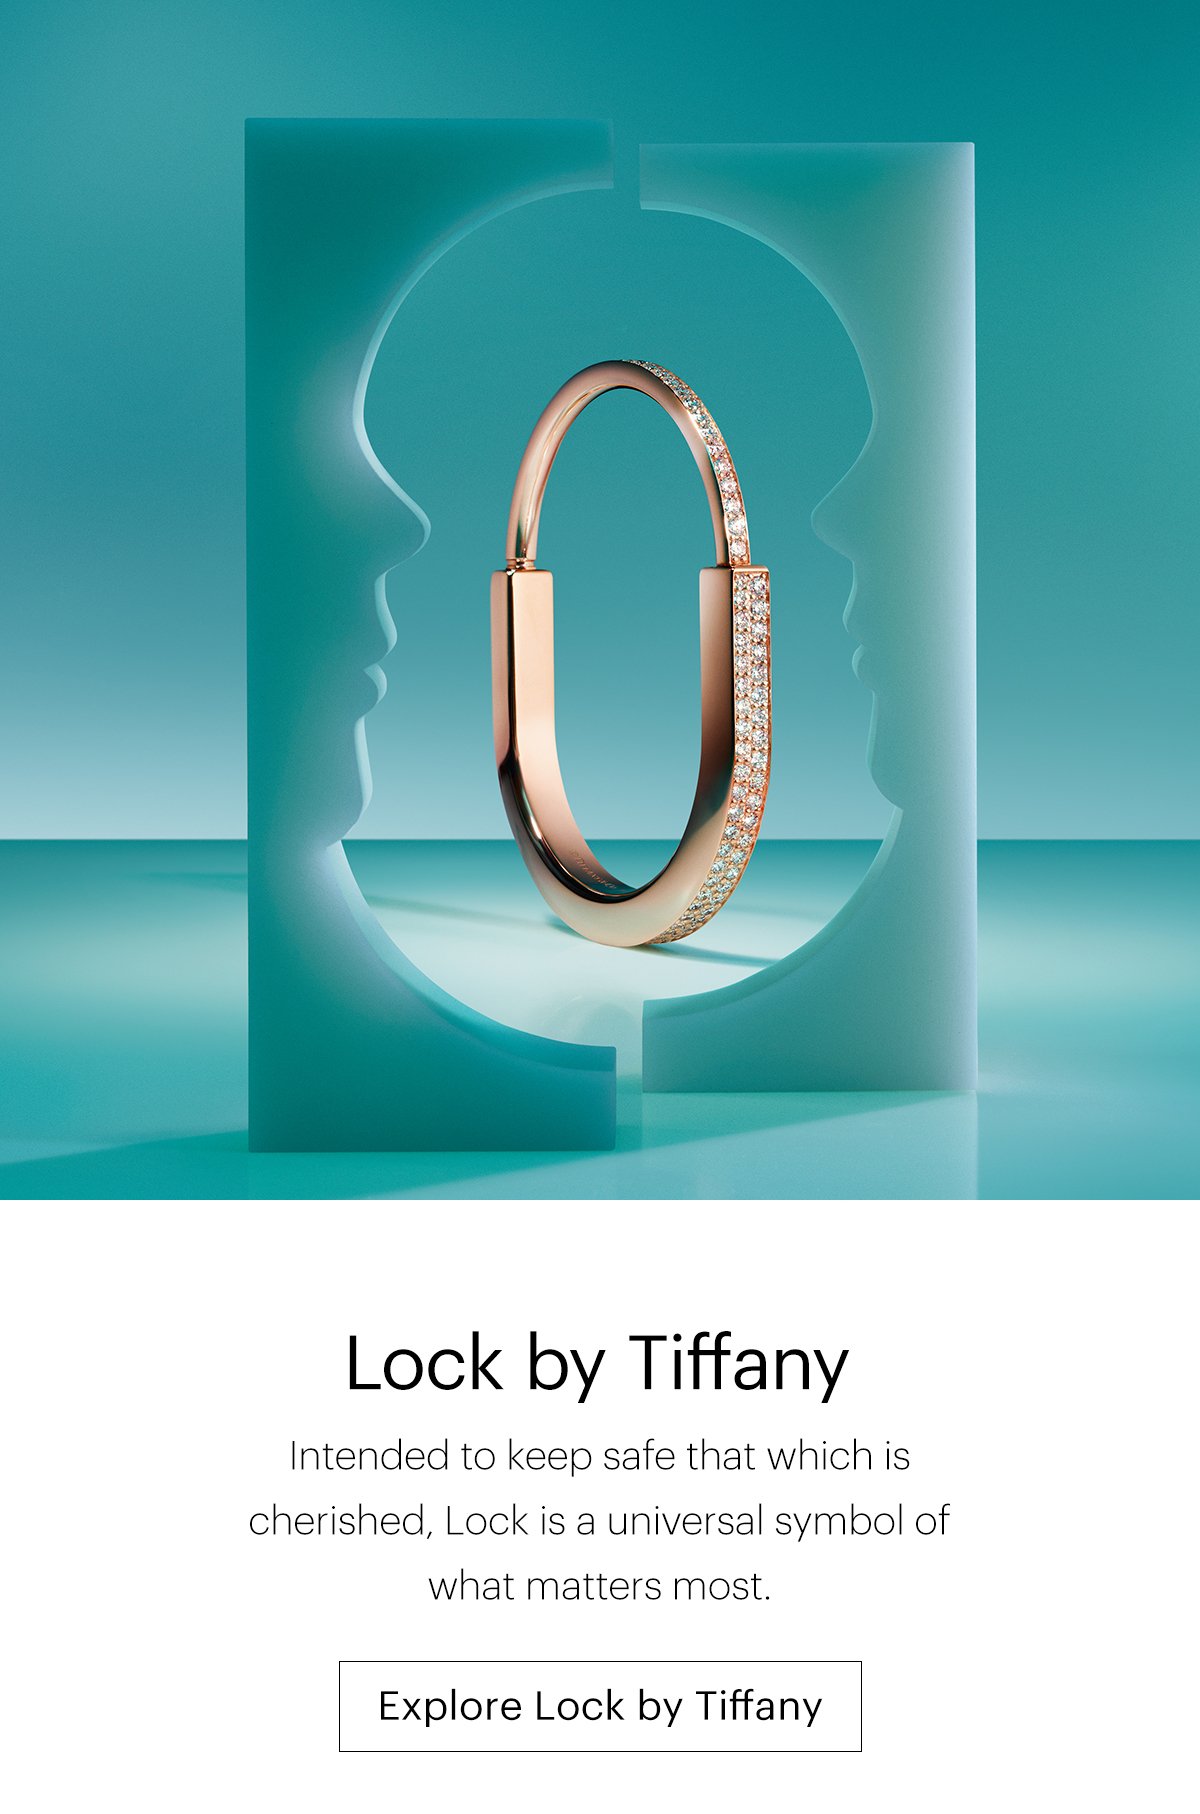 Explore Lock by Tiffany